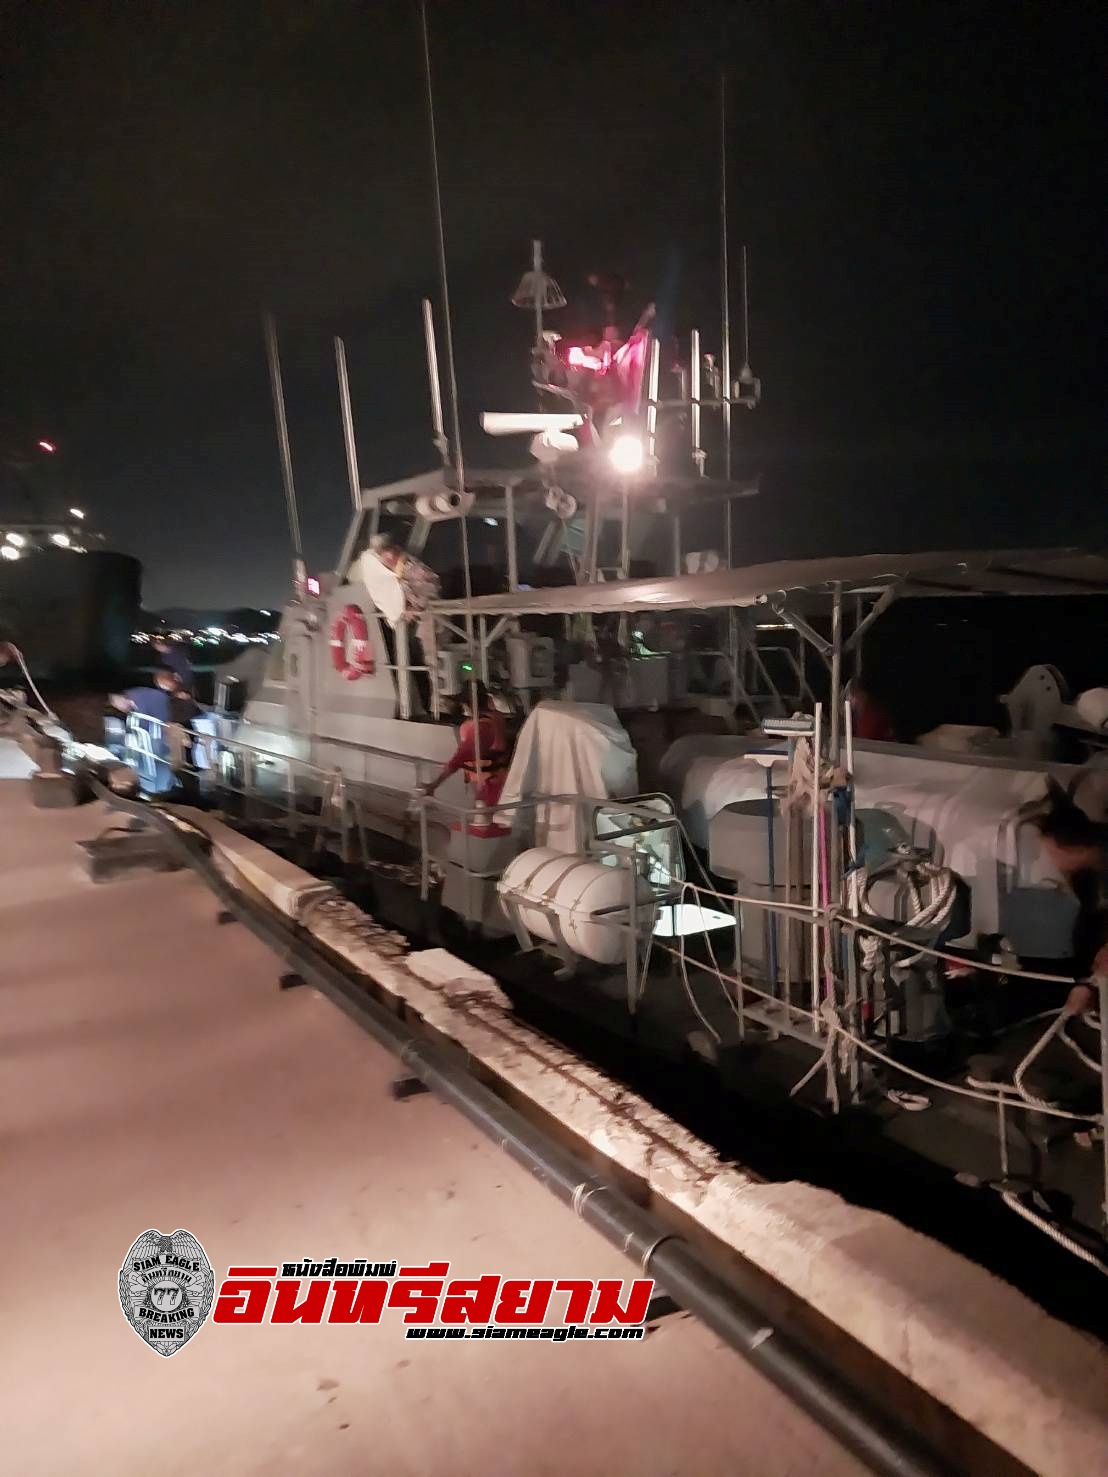 ชลบุรี-ศรชล.ภาค 1 ร่วม ทรภ.1 เร่งช่วยเหลือลูกเรือประมงบาดเจ็บ ก่อนเรือจมใต้ทะเล